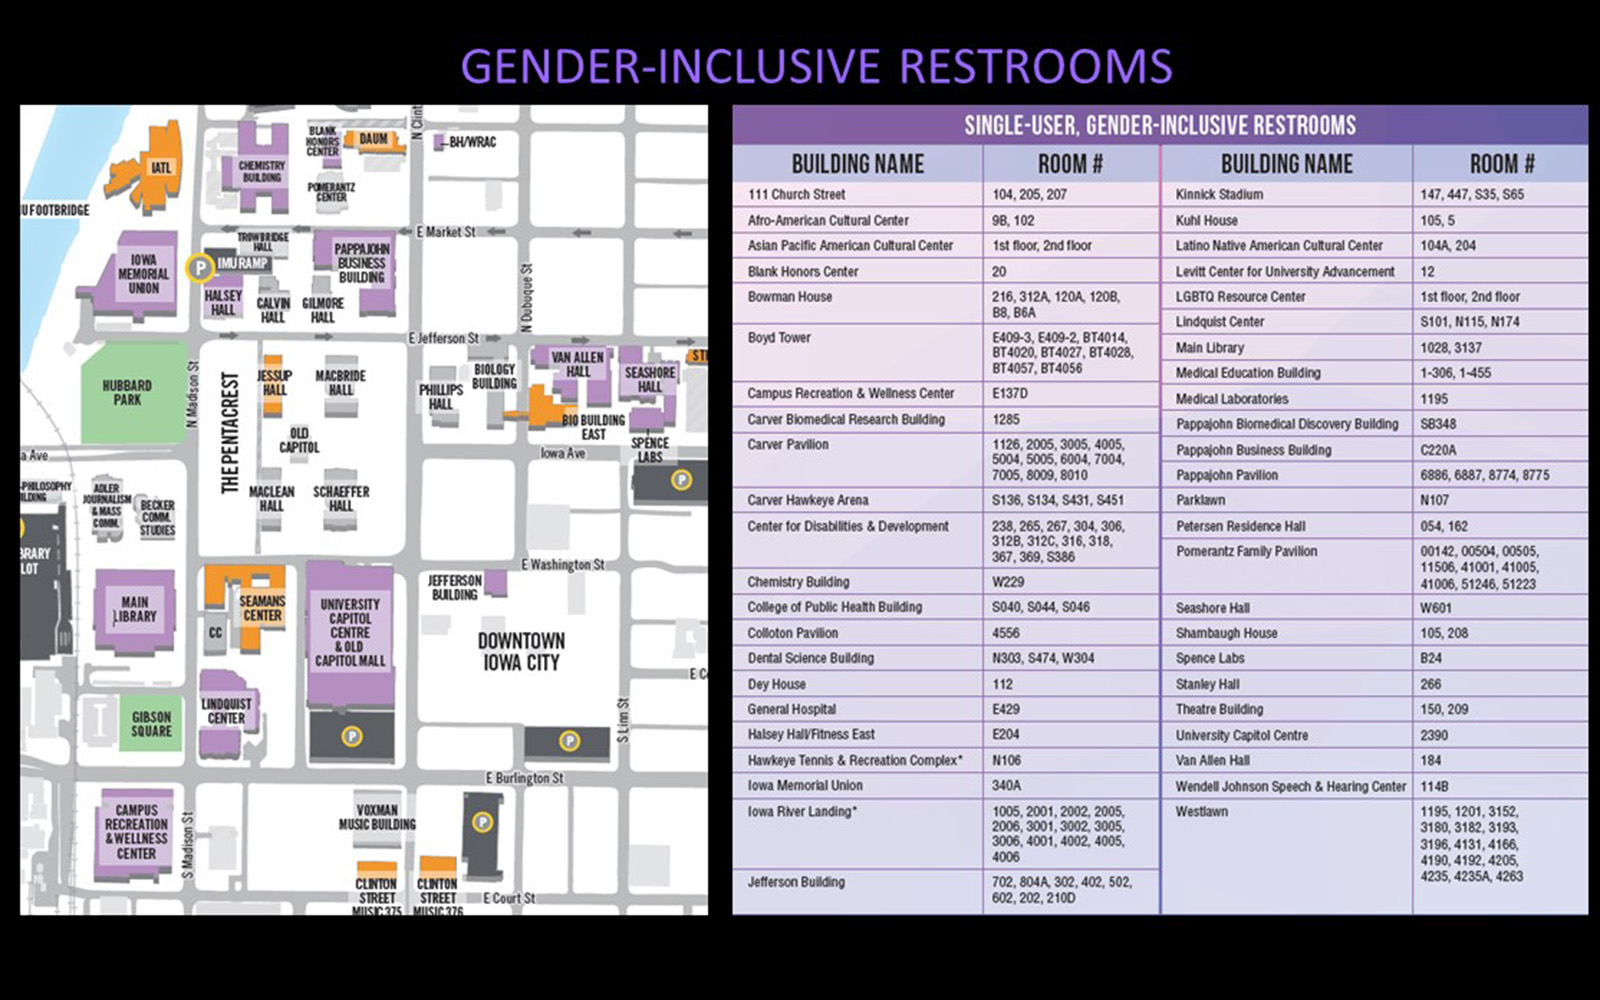 University of Iowa Gender-Inclusive Restrooms